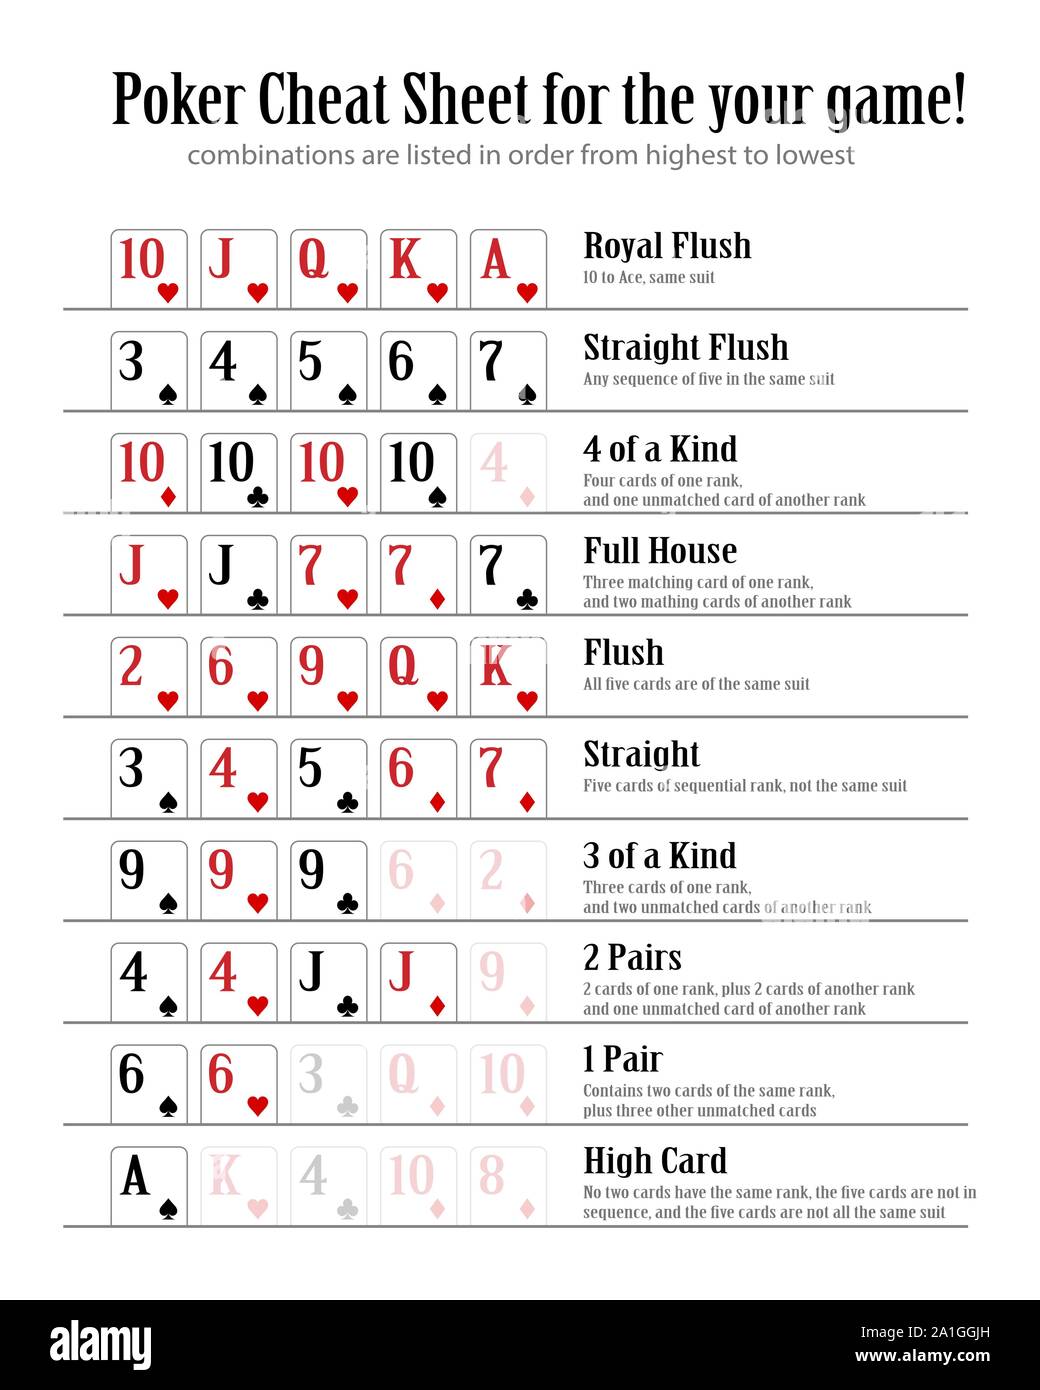 Poker hand rankings combination set Banque d'images vectorielles - Alamy